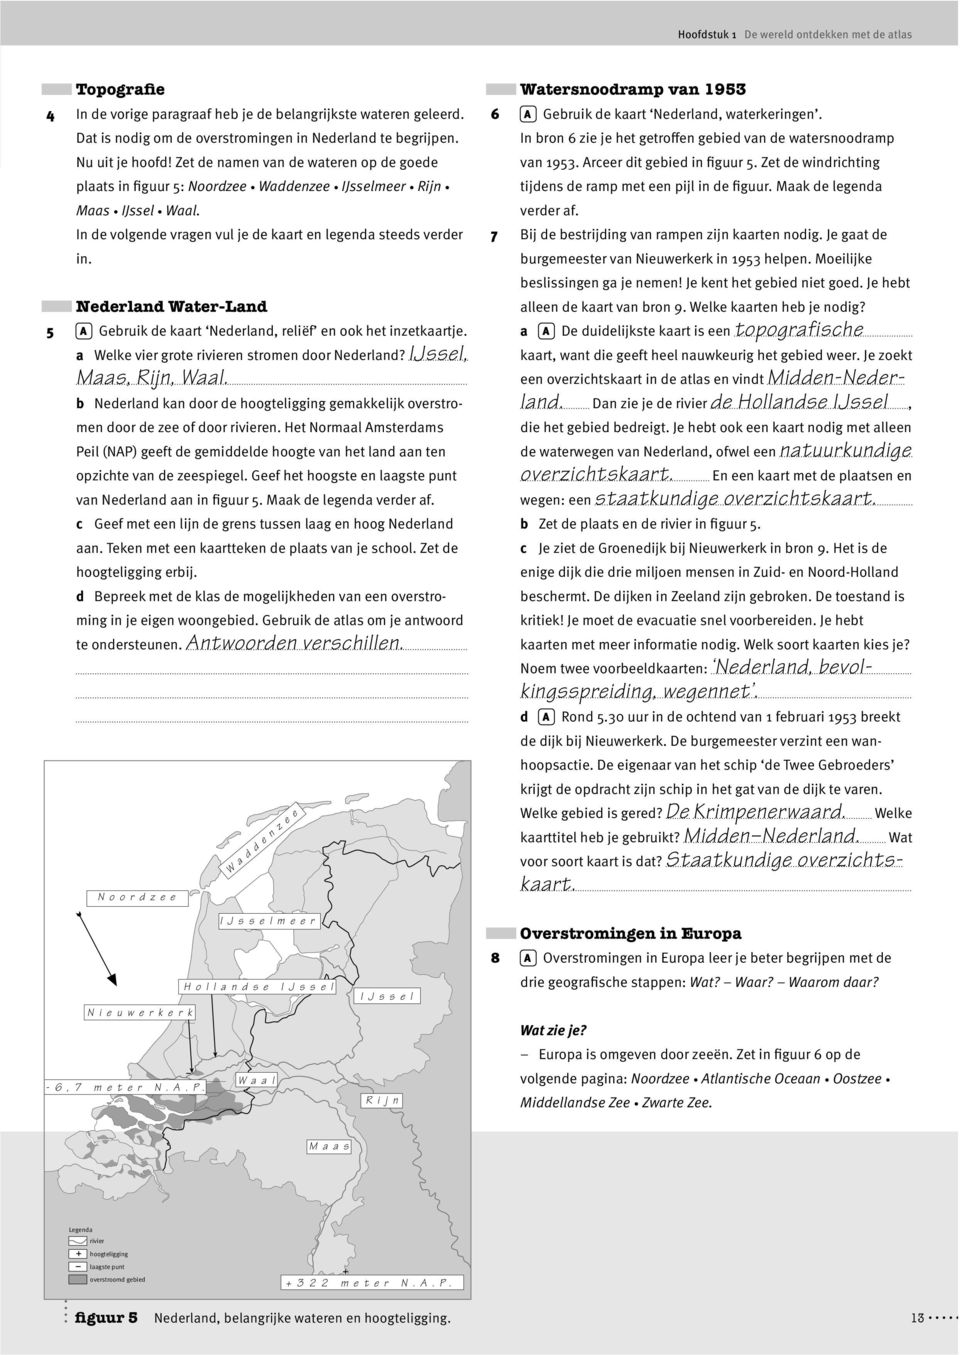 Nederland Water-Land 5 A Gebruik de kaart Nederland, reliëf en ook het inzetkaartje. a Welke vier grote rivieren stromen door Nederland? IJssel, Maas, Rijn, Waal.